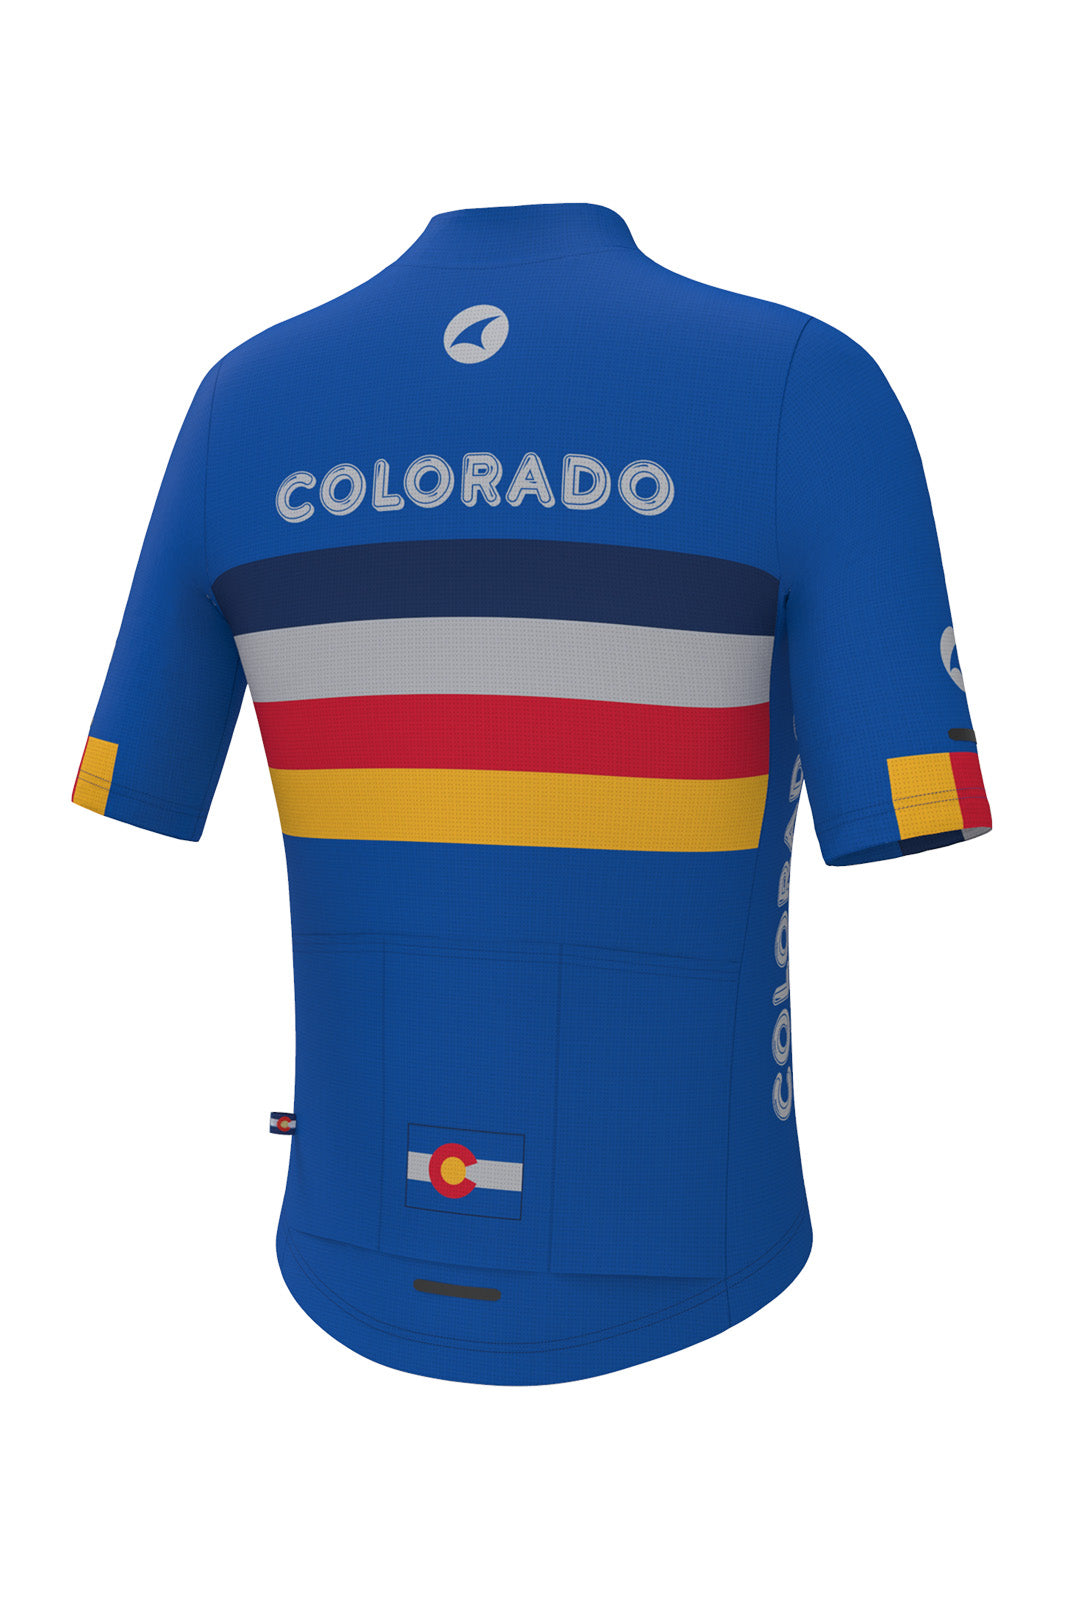 Women's Retro Colorado Cycling Jersey - Ascent Aero Back View